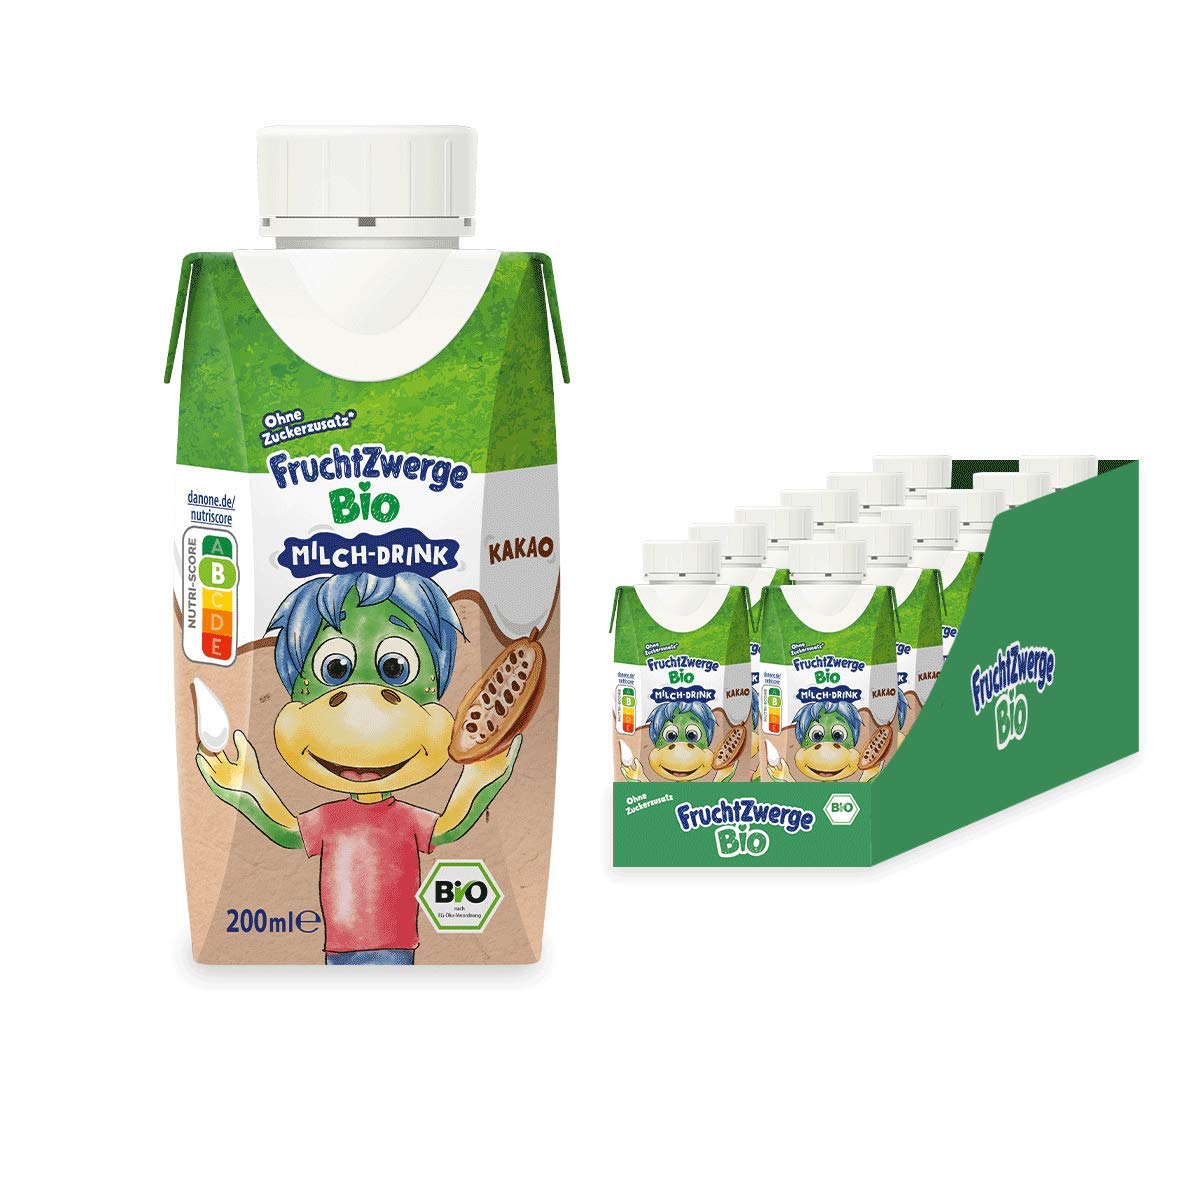 Fruchtzwerge Bio Milch-Drink Kakao, 12er Pack